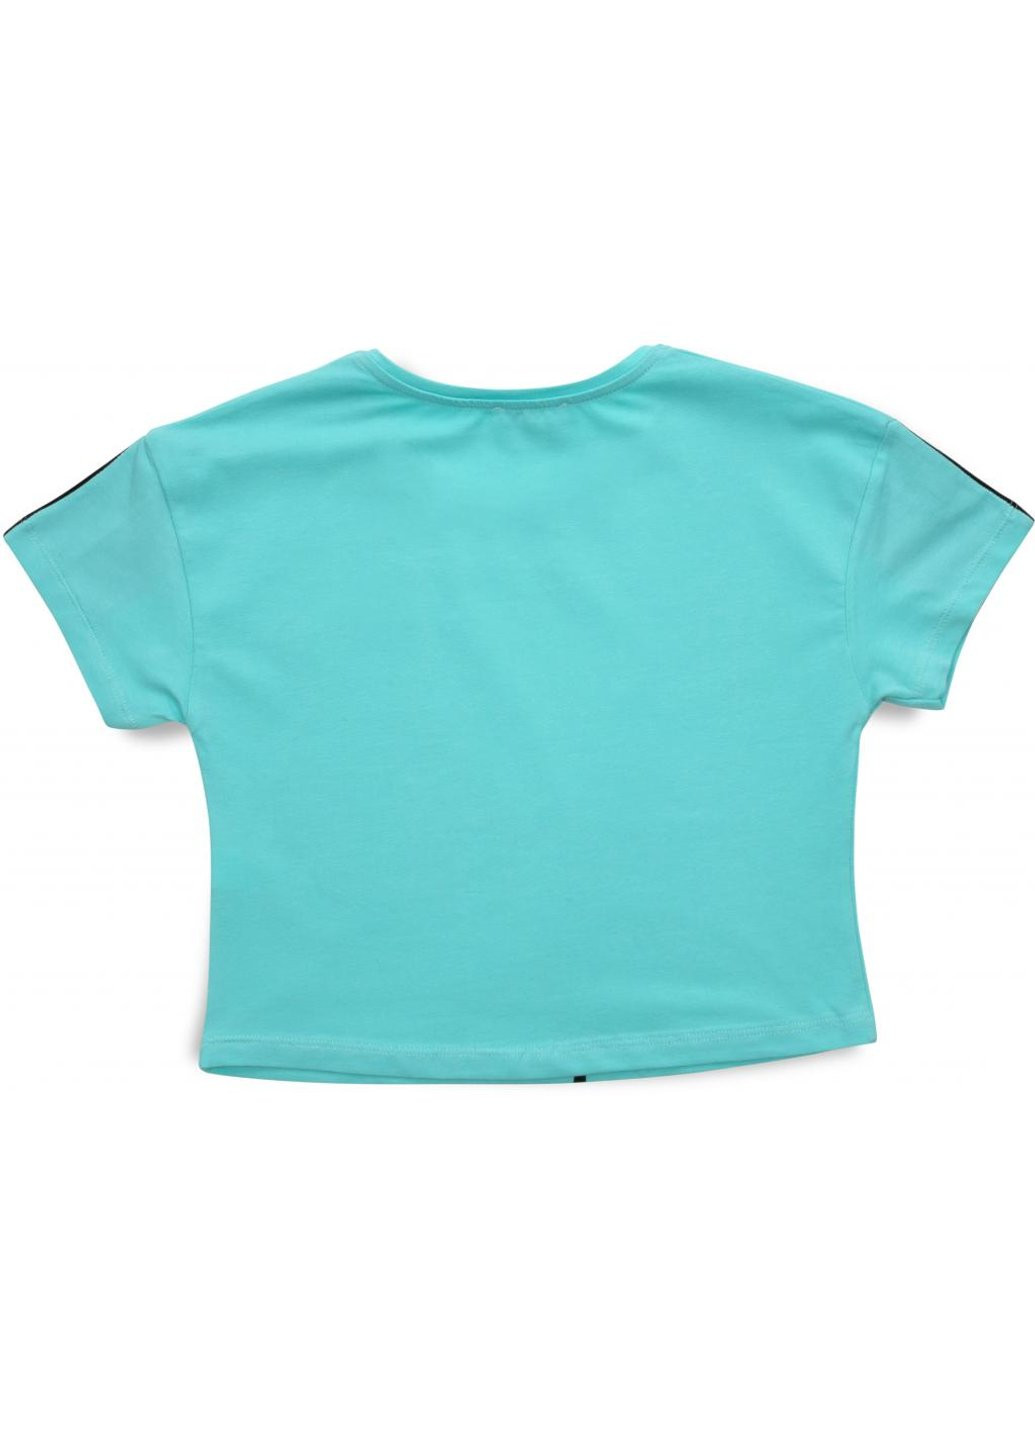 Комбинированная футболка детская с мишкой (3023-164g-green) Matilda